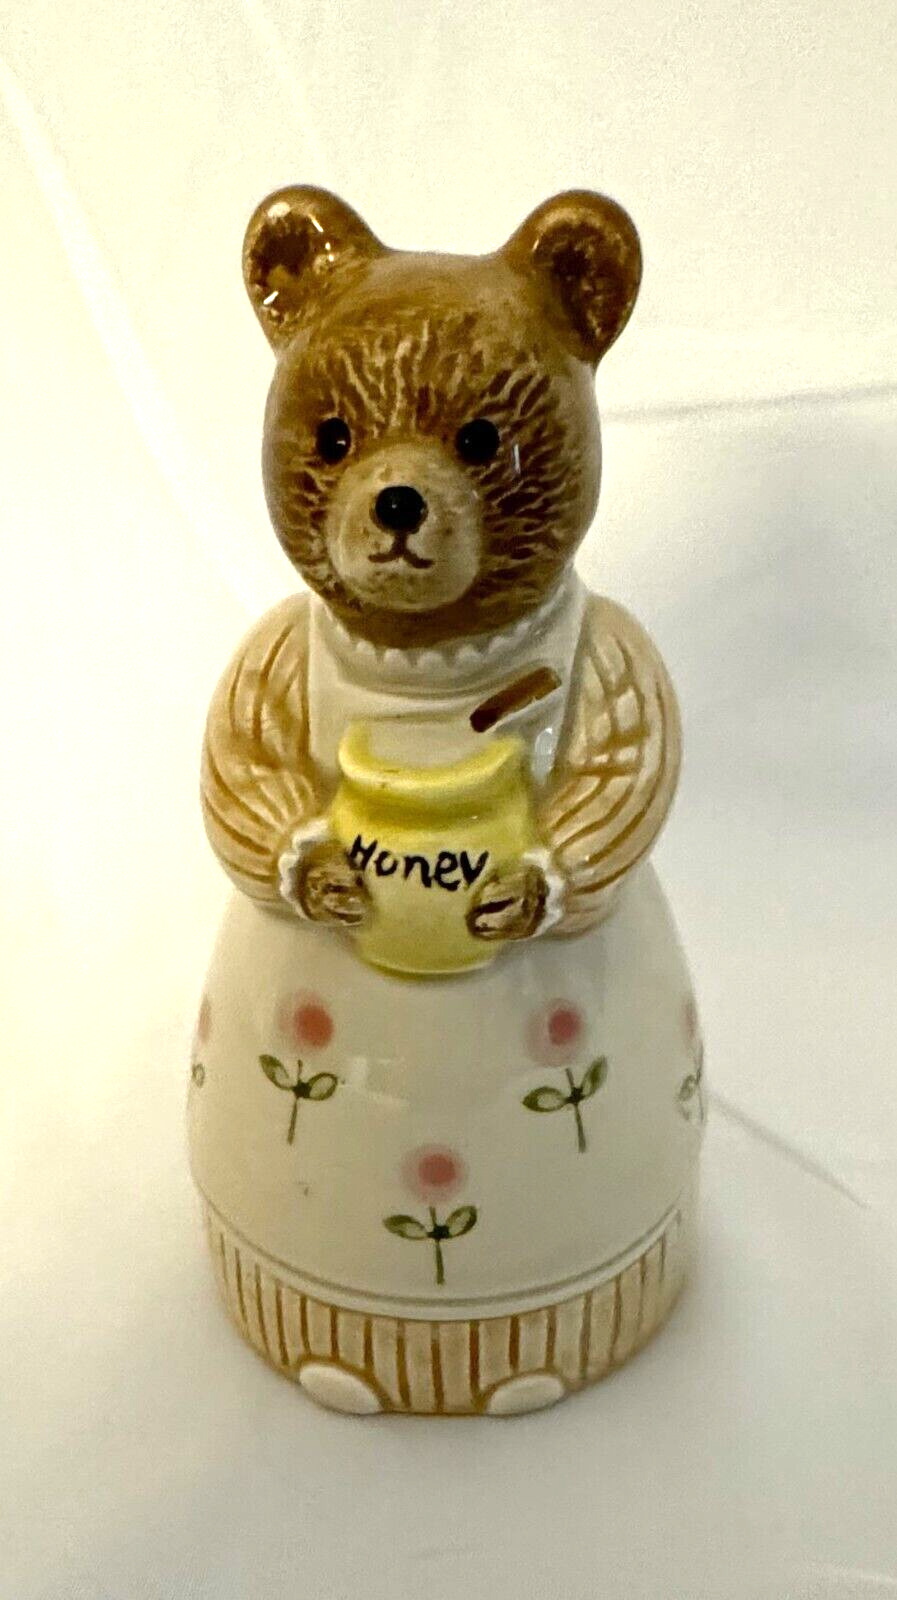  Vintage Bear & Honey Salt Shaker Ceramic  Otagiri Japan